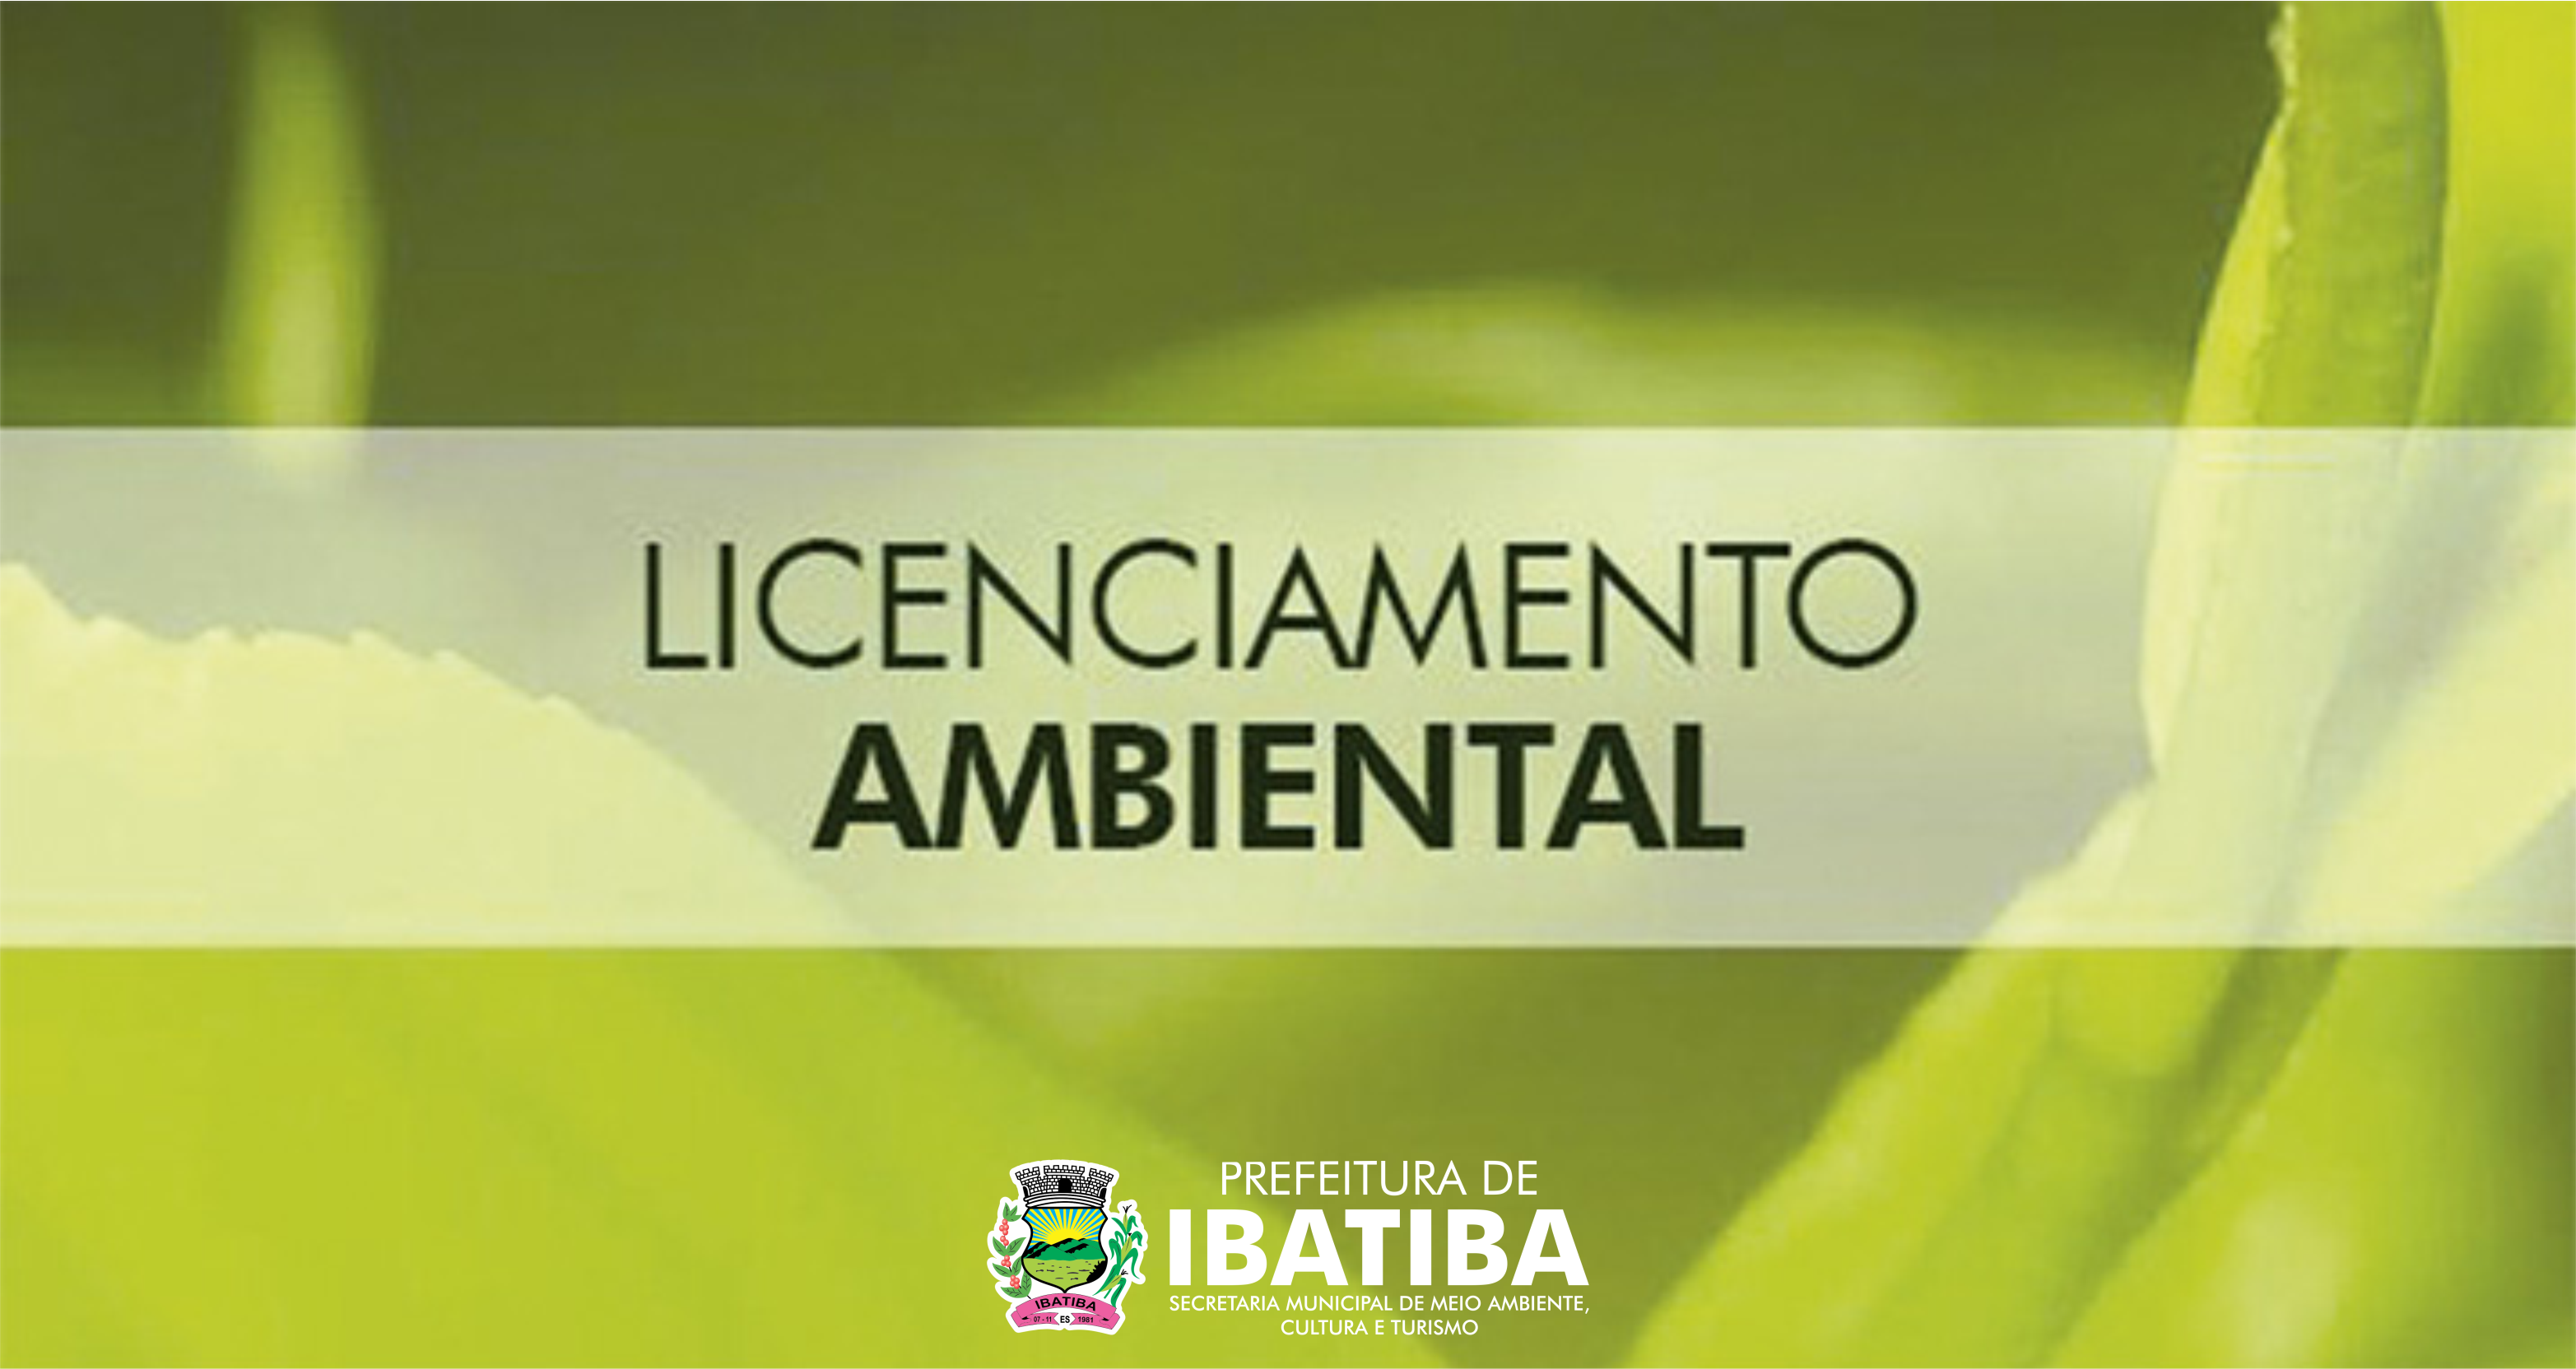 Desenvolvimento Sustentável: Ibatiba realiza Licenciamento Ambiental